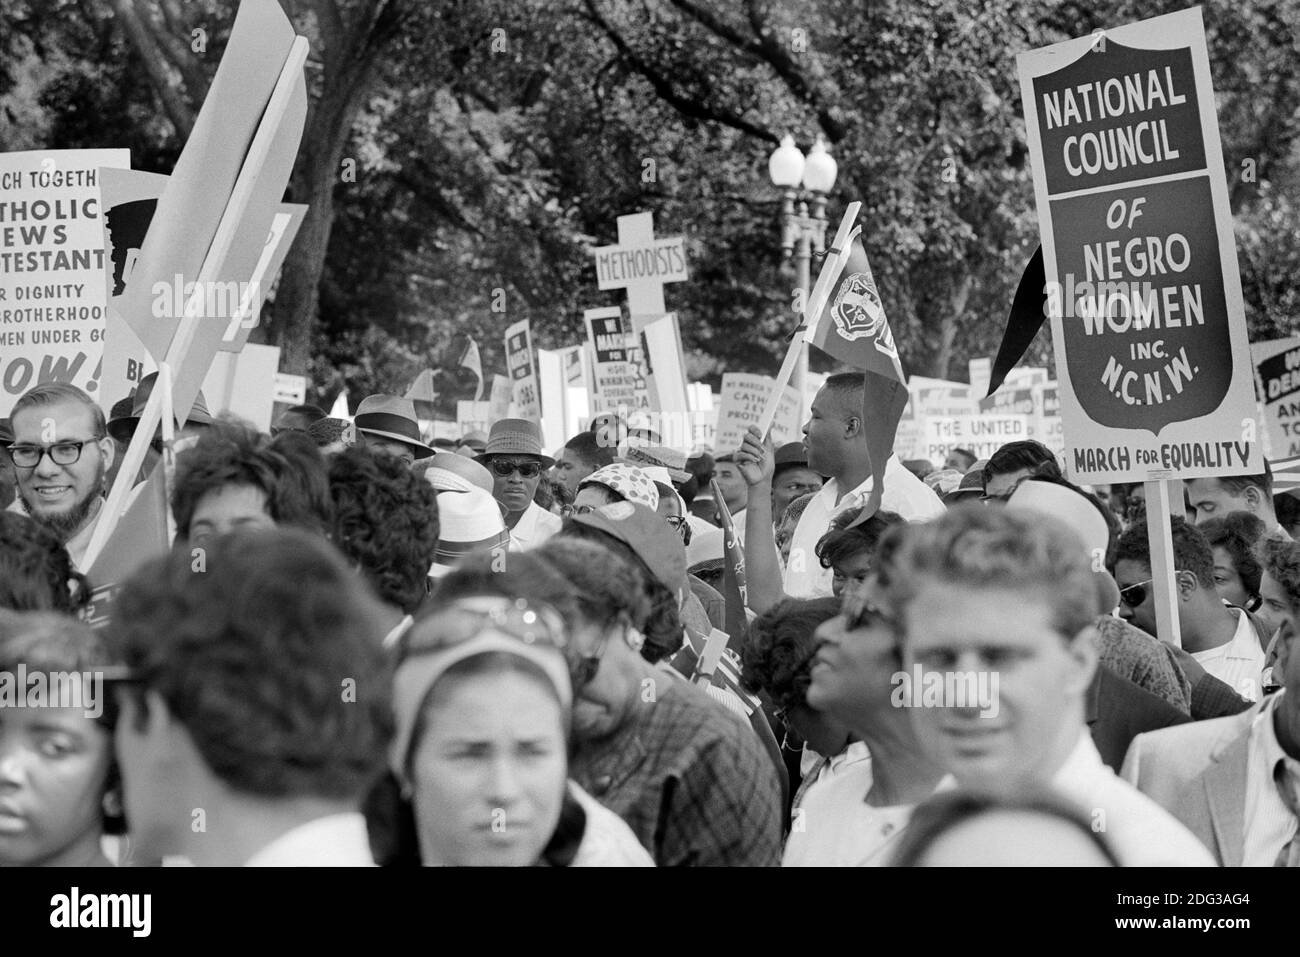 Protestierende mit Schildern auf dem Marsch auf Washington für Arbeitsplätze und Freiheit, Washington, D.C., USA, Foto von Marion S. Trikosko, 28. August 1963 Stockfoto